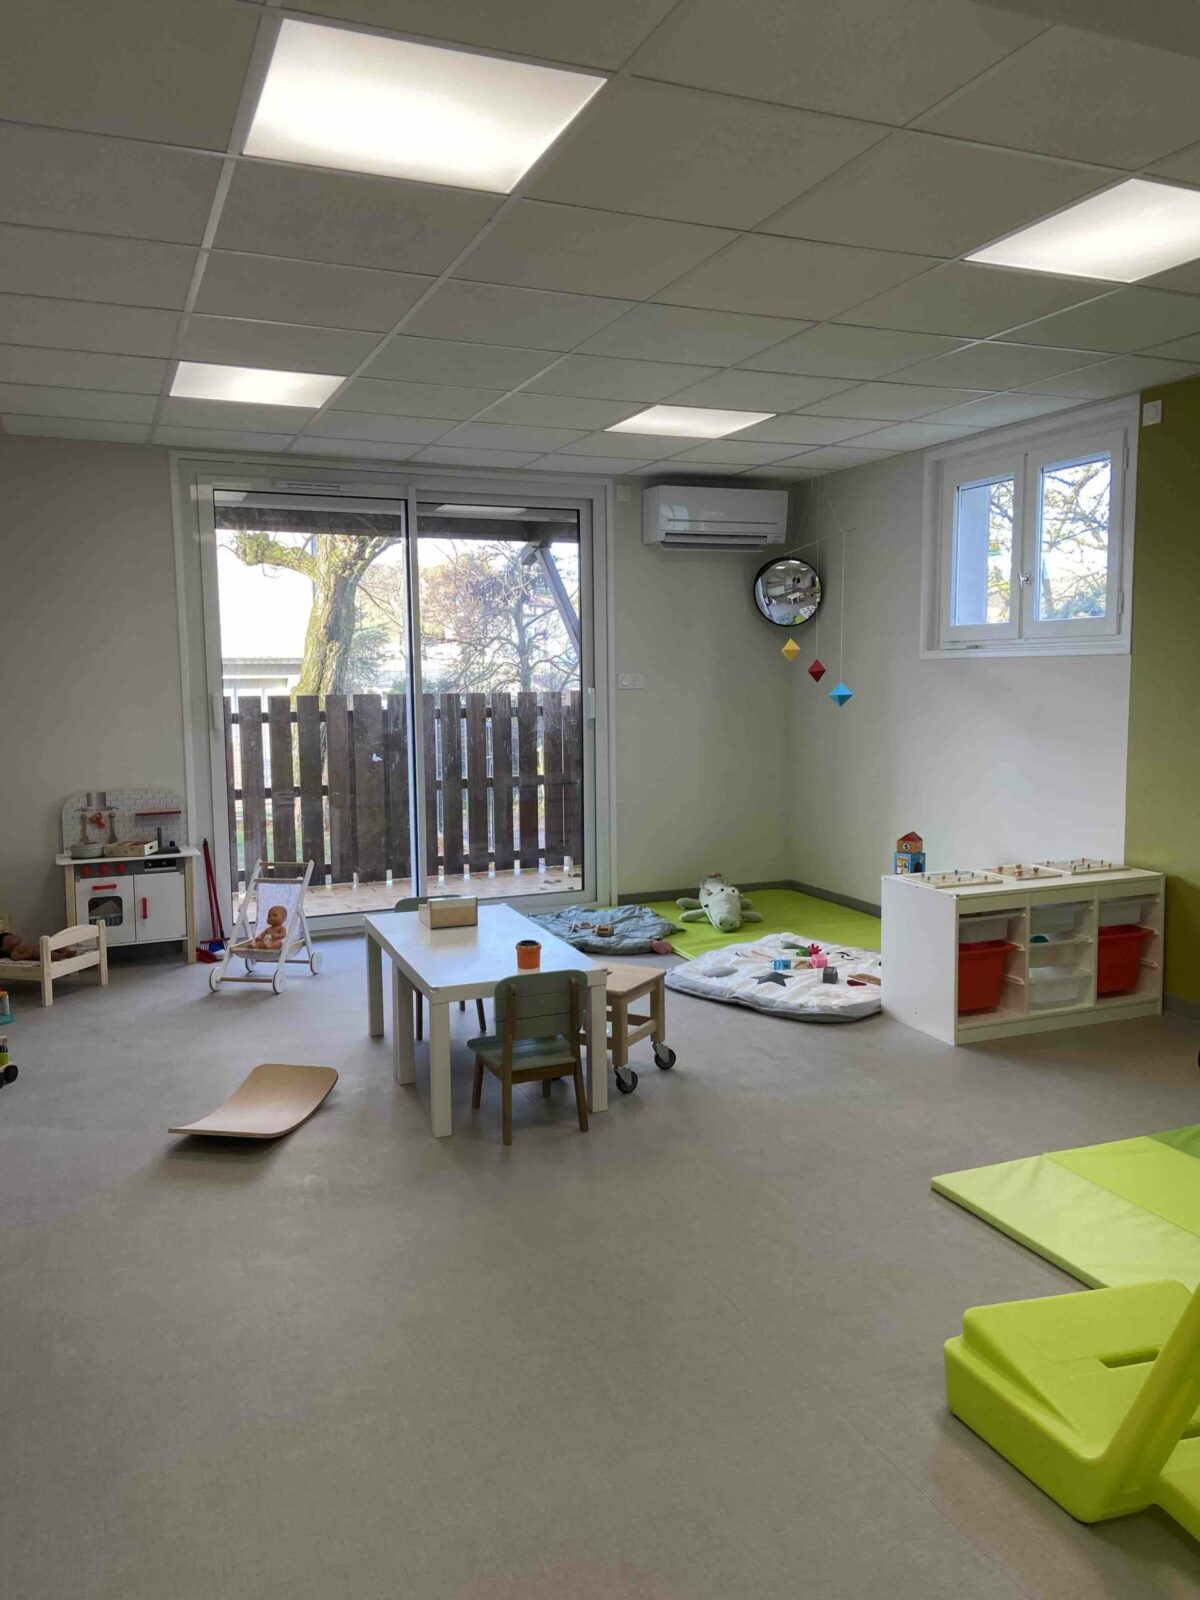 La décoration d'une chambre d'enfant selon la pédagogie de Maria Montessori  - Elle Décoration